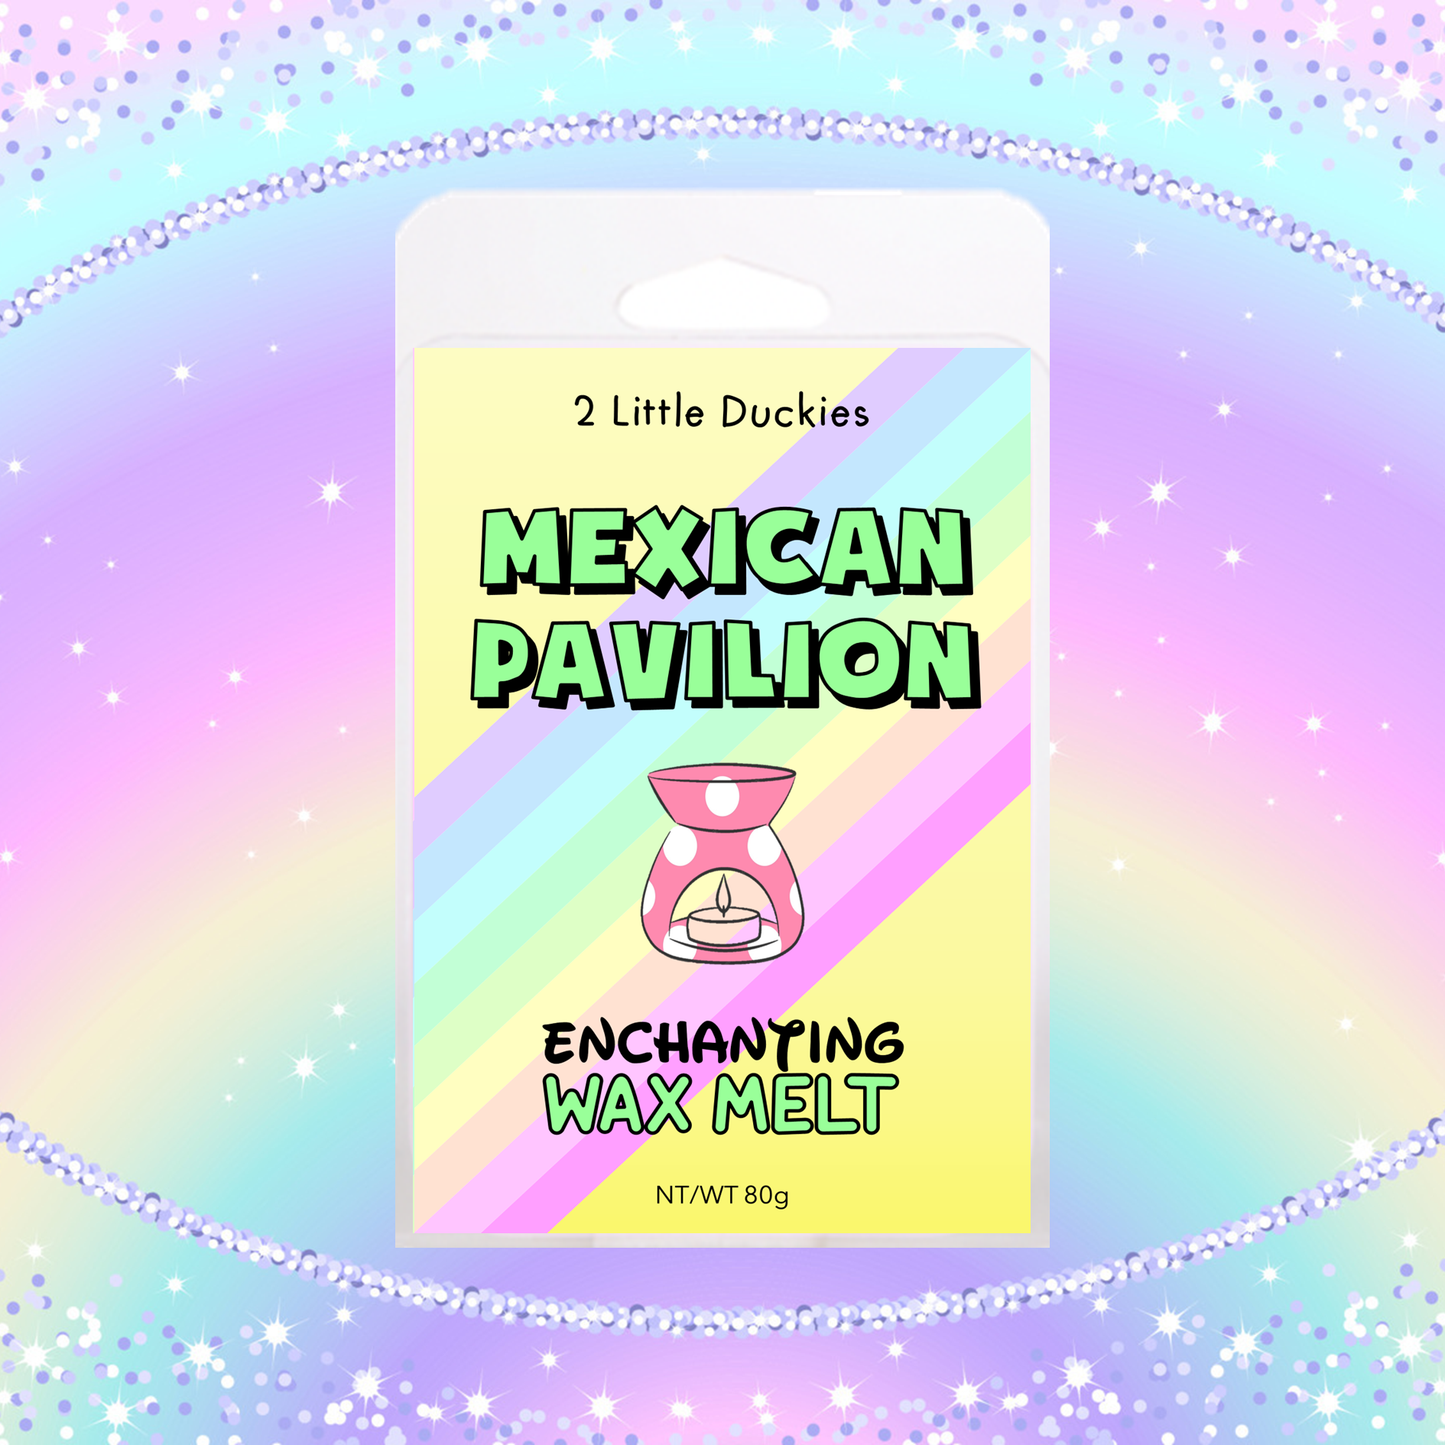 Mexican Pavilion Wax Melt